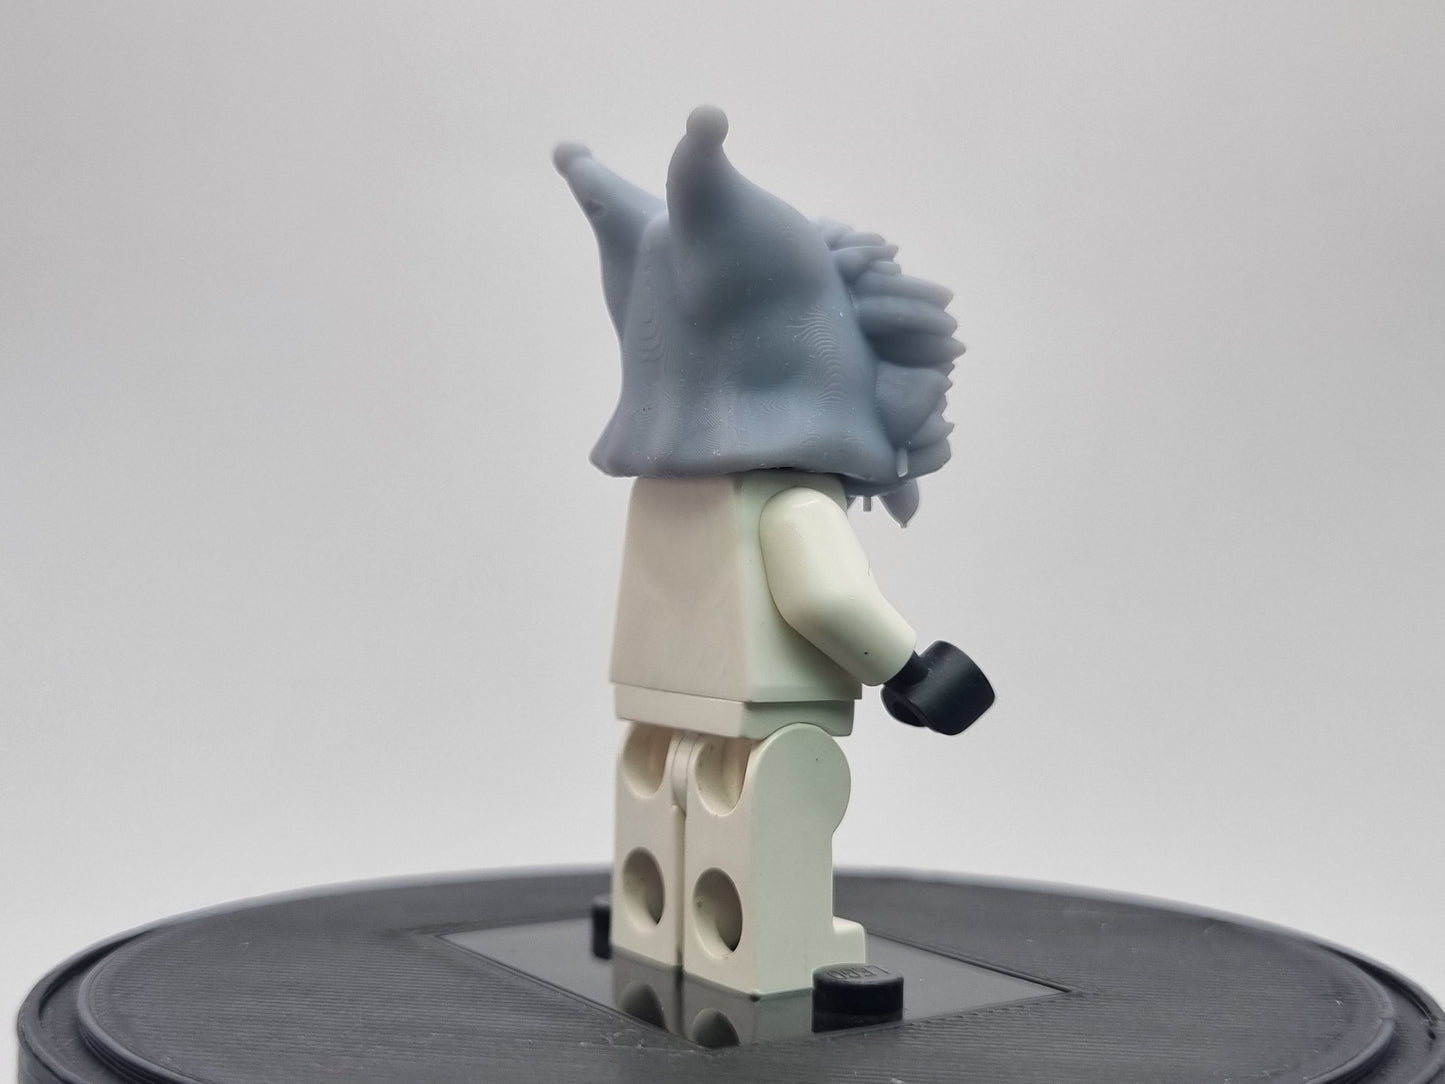 Building toy custom 3D snow hood for learner female alien!